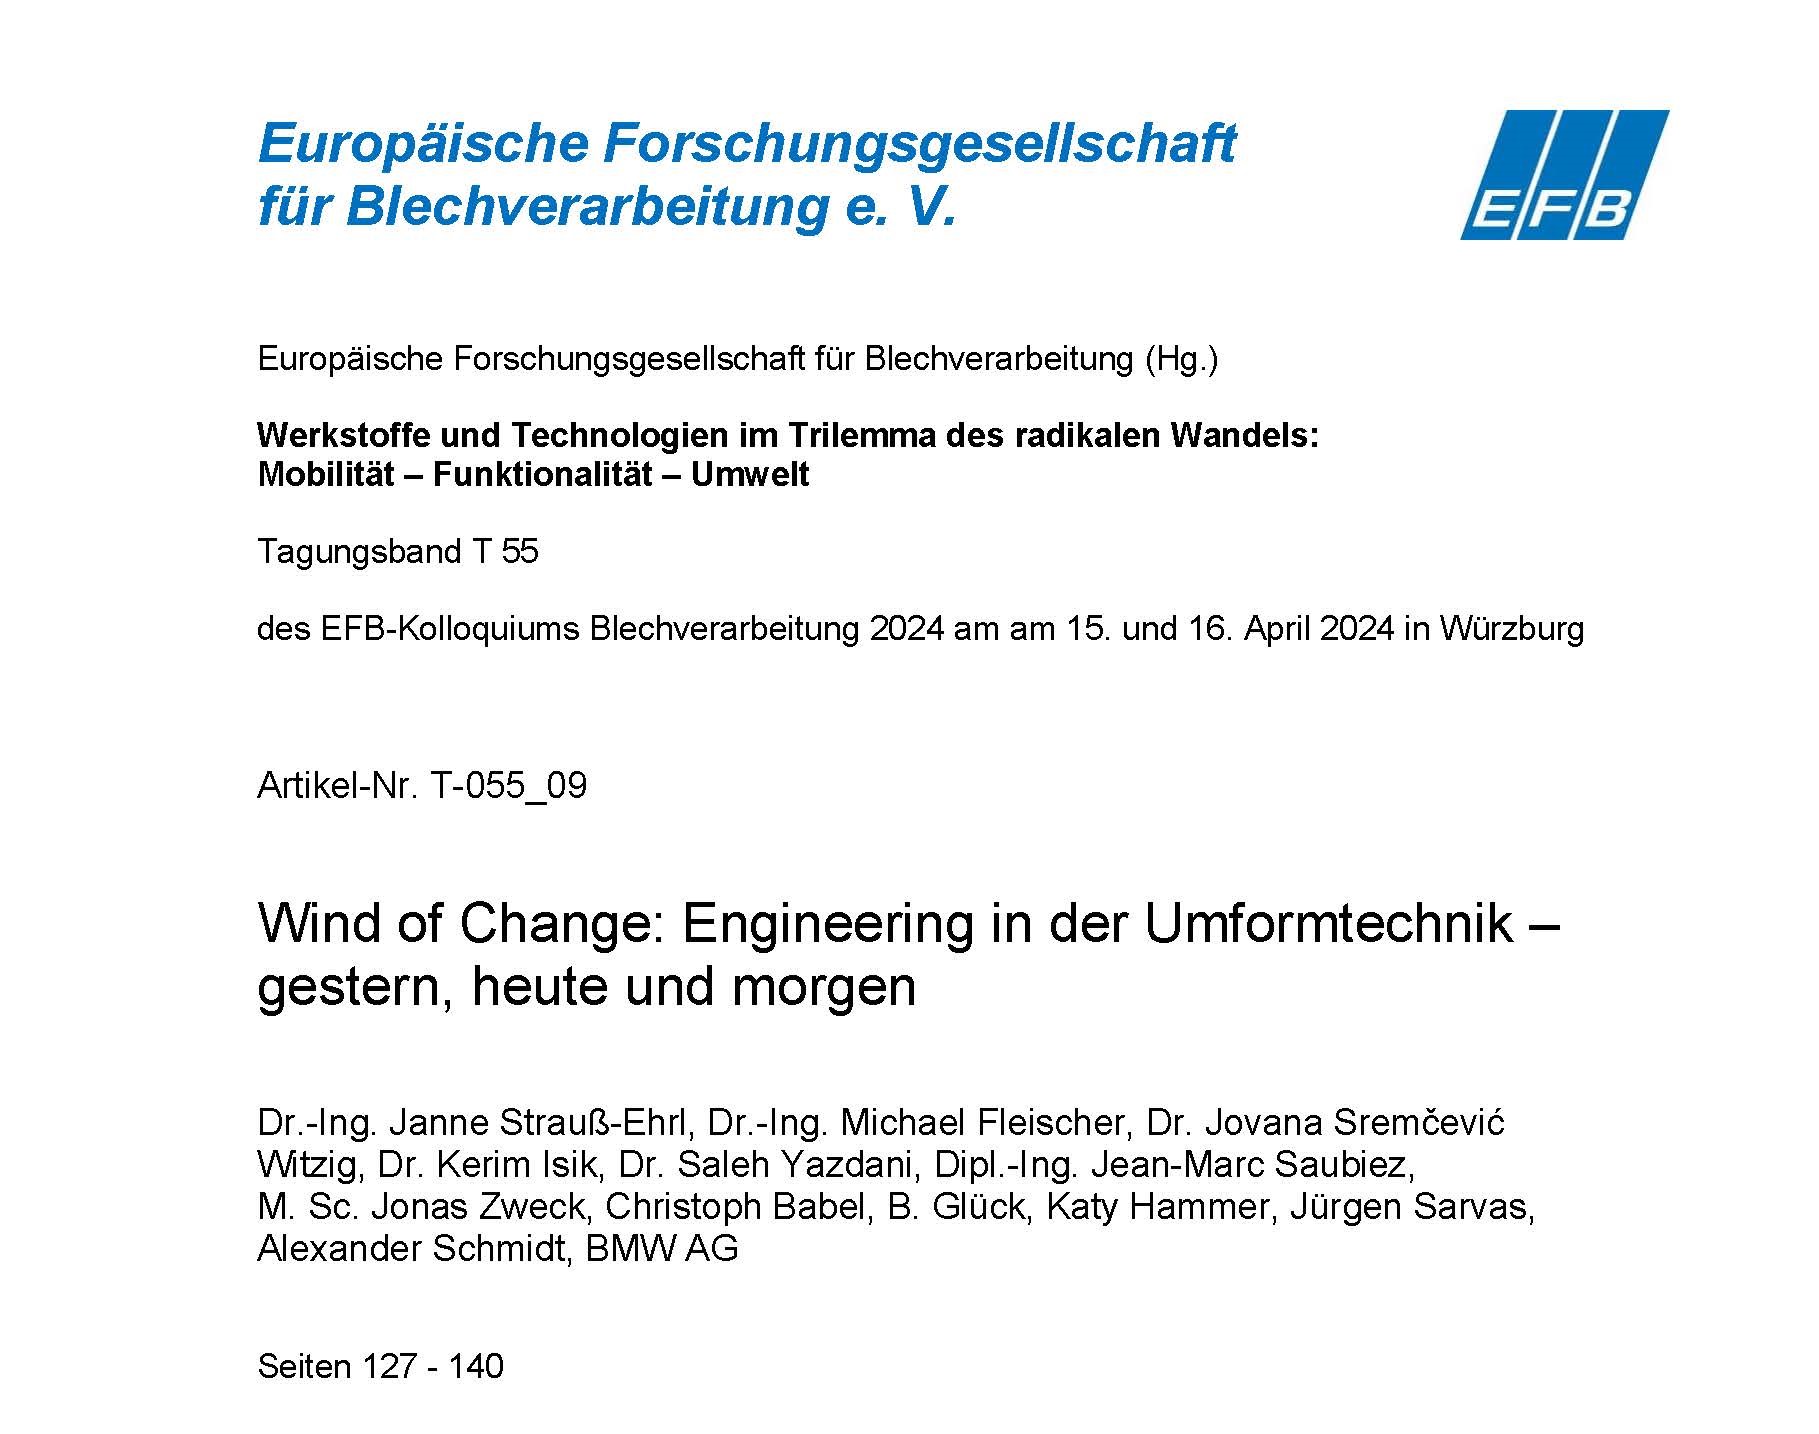 Wind of Change: Engineering in der Umformtechnik – gestern, heute und morgen